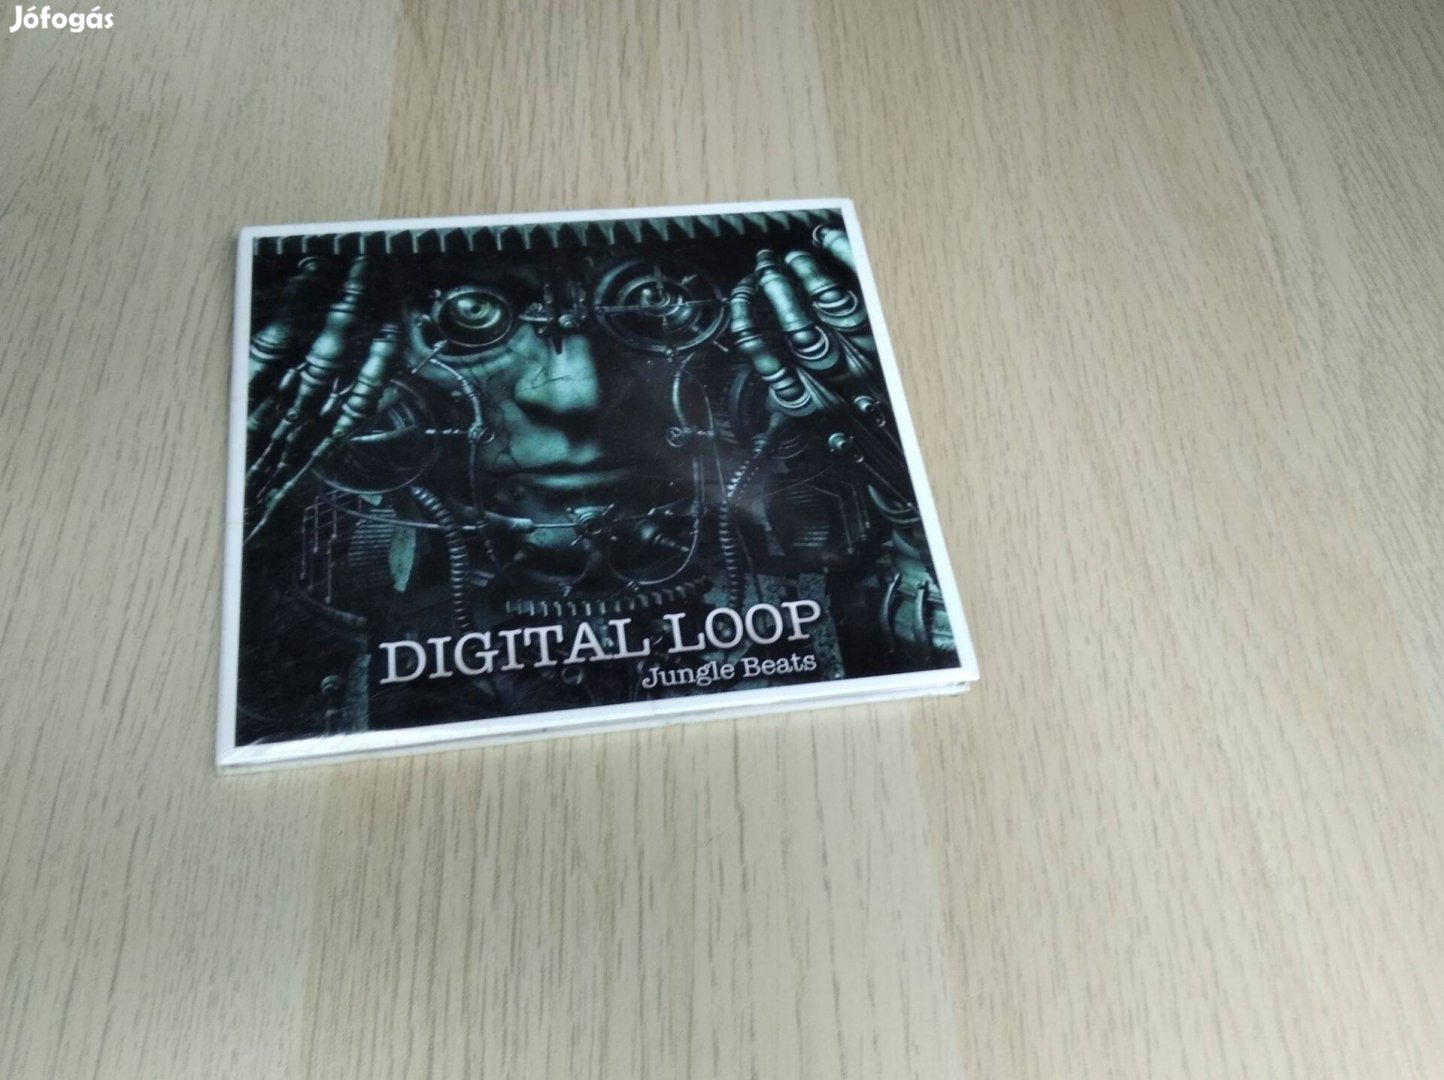 Digital Loop - Jungle Beats / CD (Bontatlan)